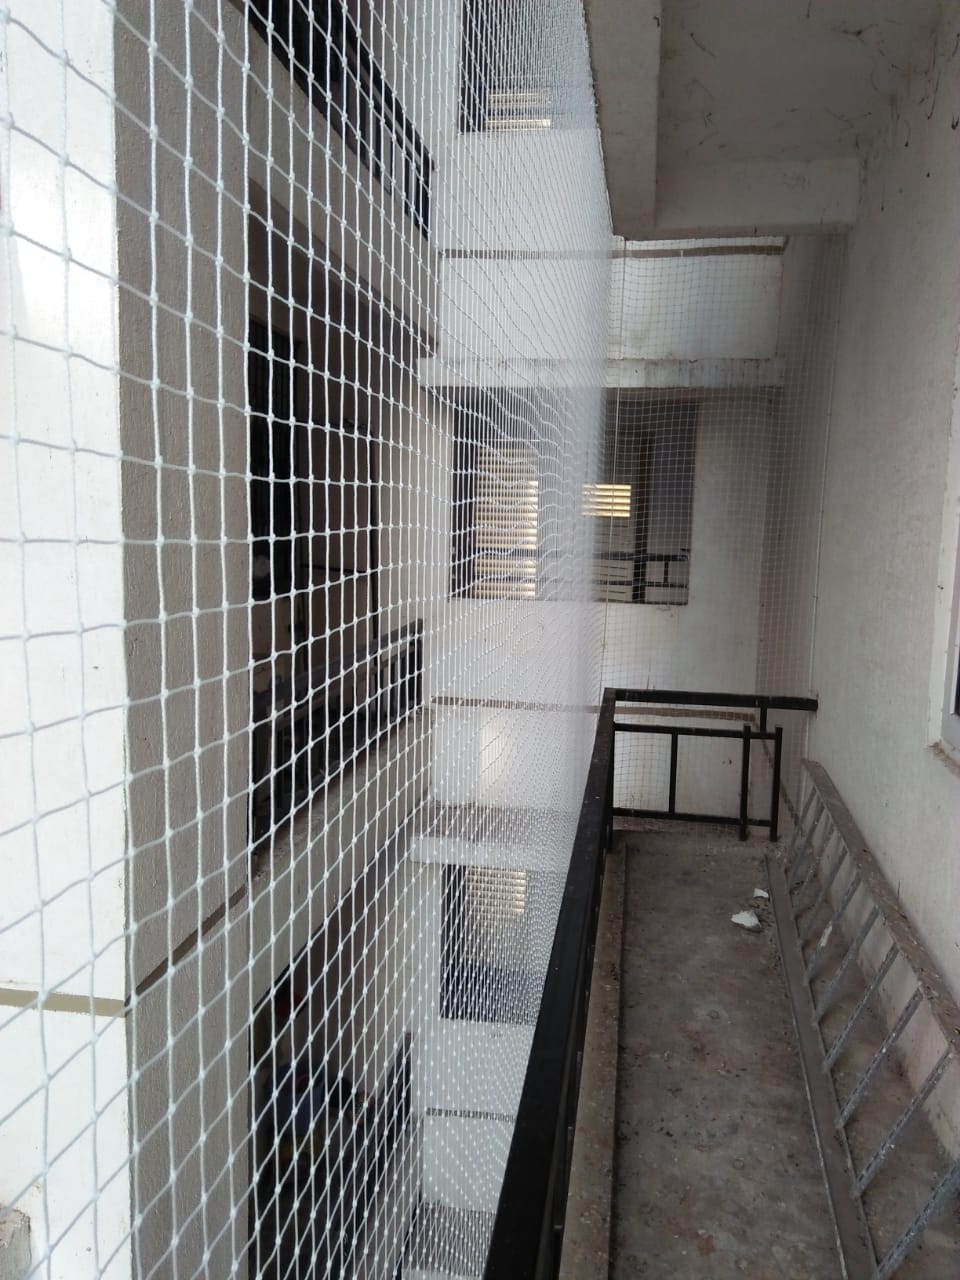 Balcony Safety Nets Miyapur